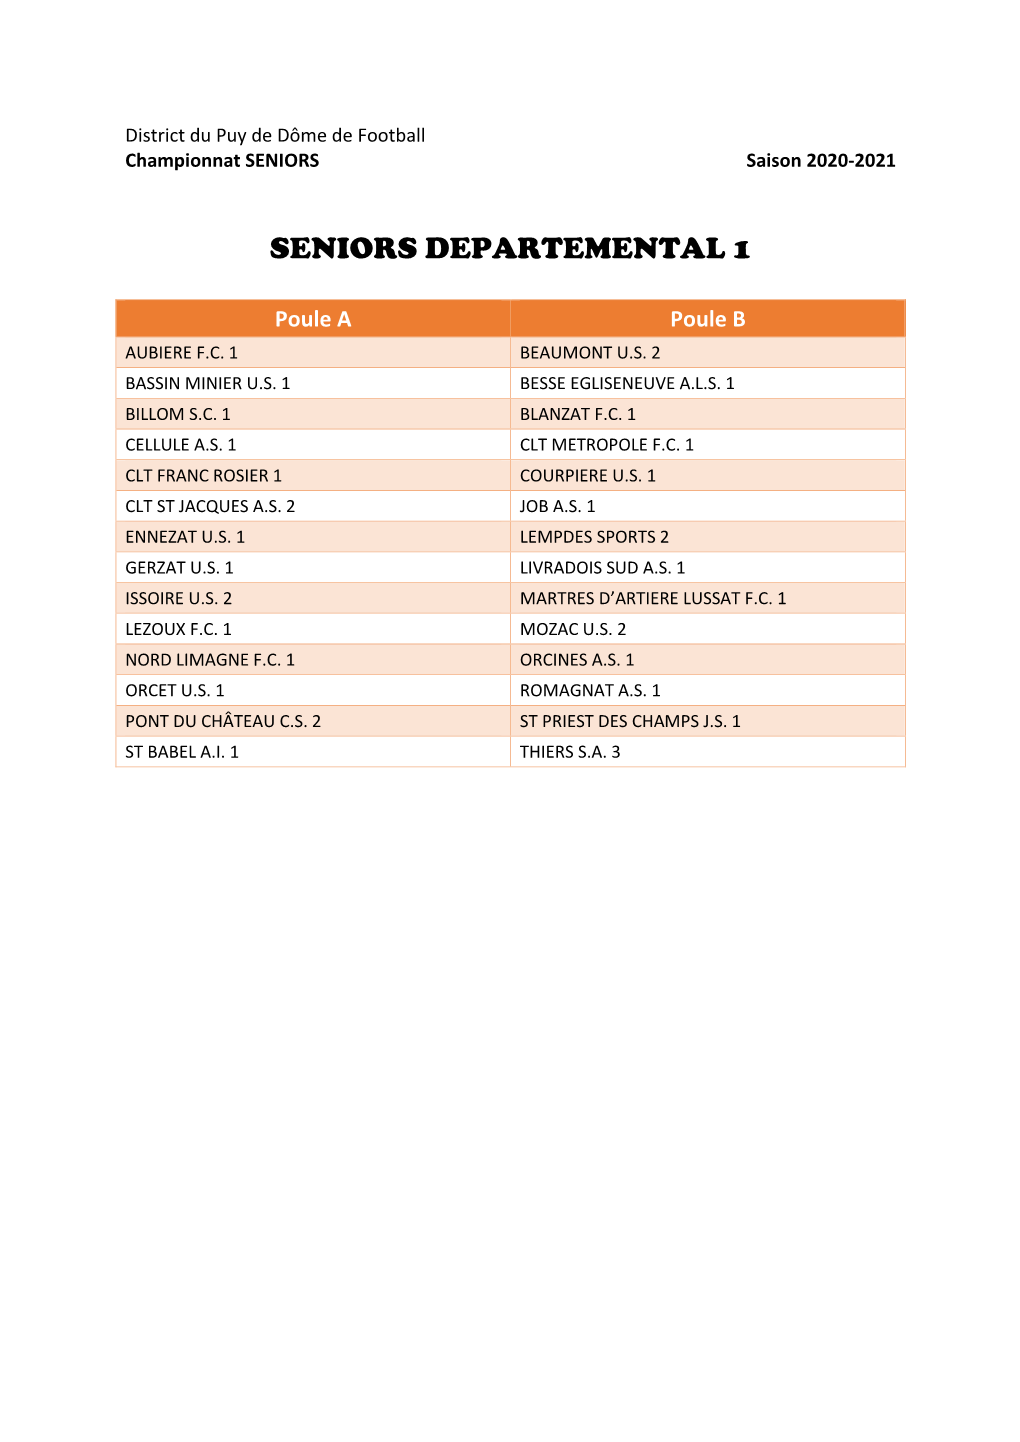 Seniors Departemental 1